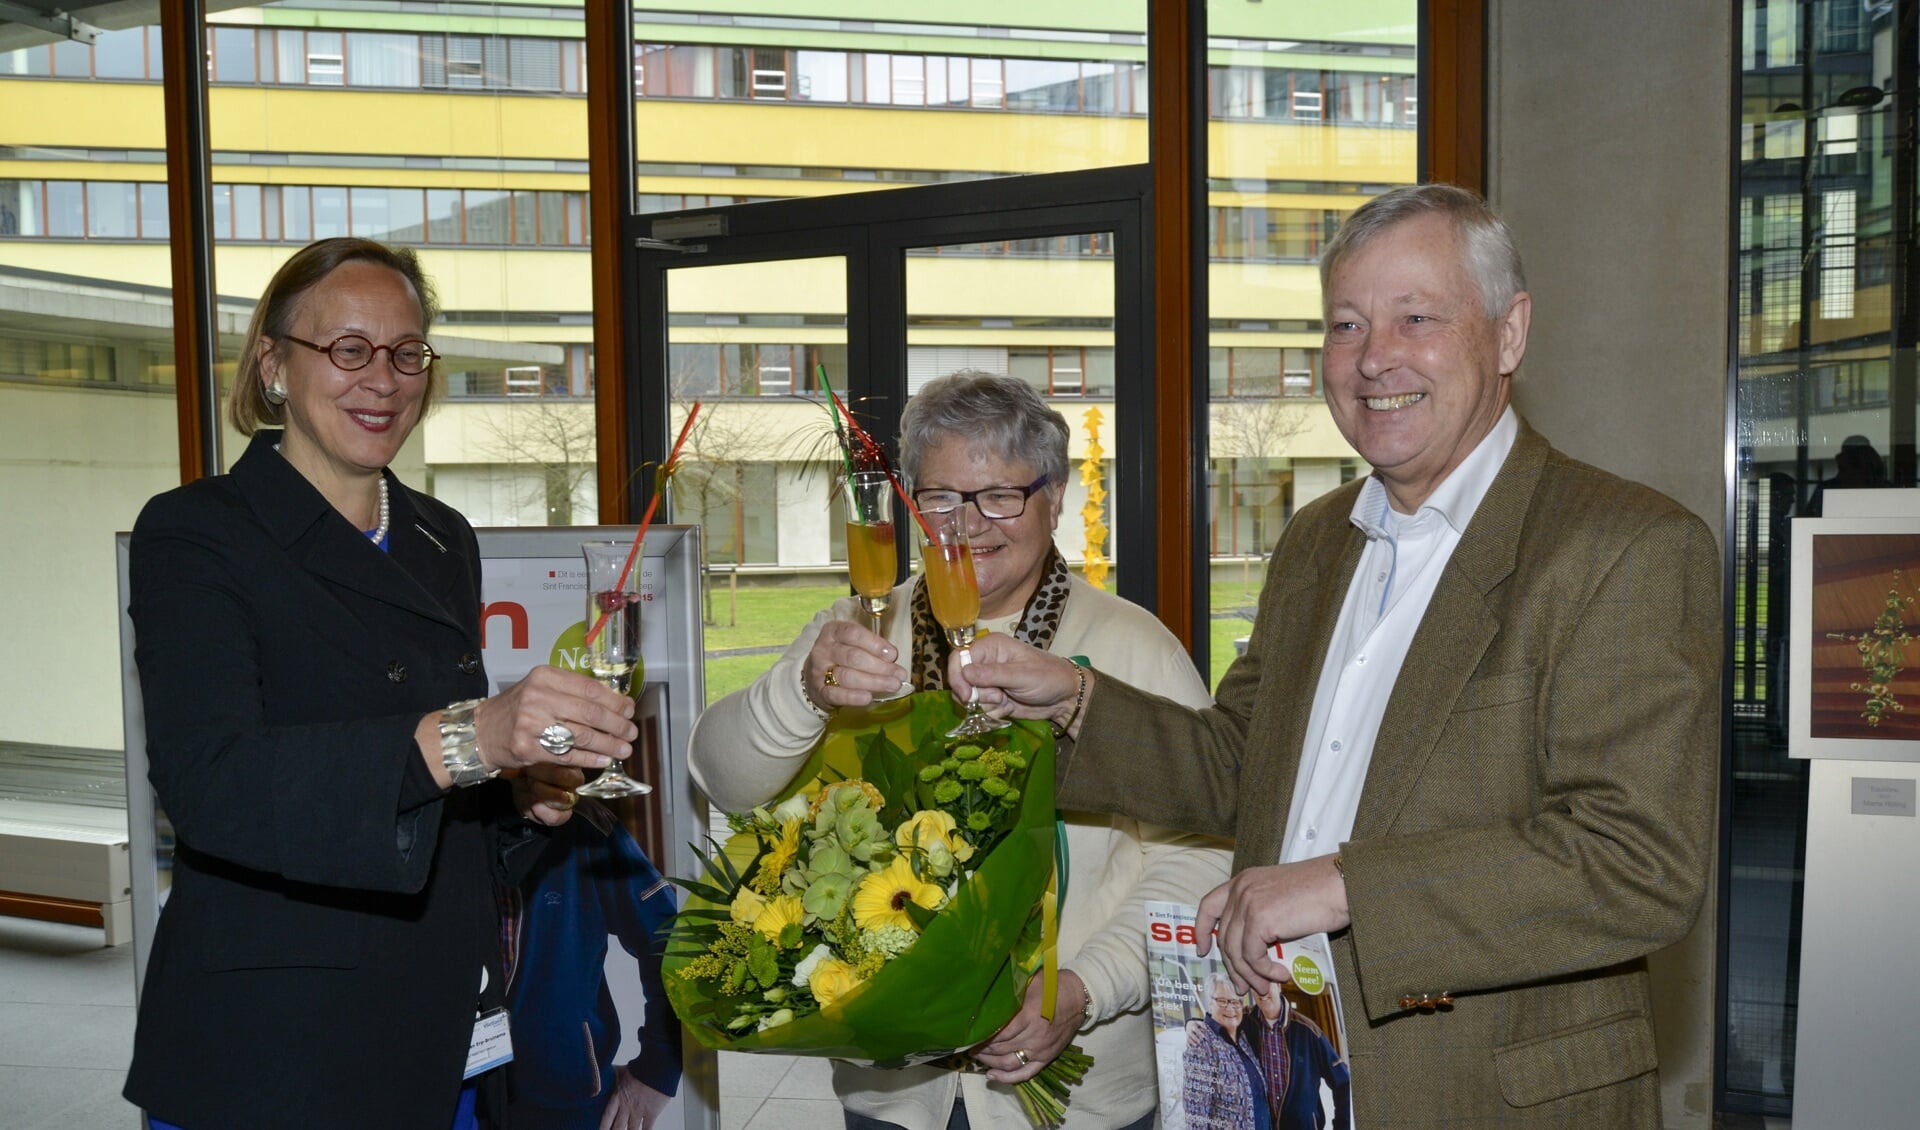 De heer en mevrouw de Vries proosten samen met Roos van Erp-Bruinsma tijdens de lancering van het nieuwe magazine SAMEN. Het echtpaar werkte mee aan een van de artikelen en poseerde voor de cover.